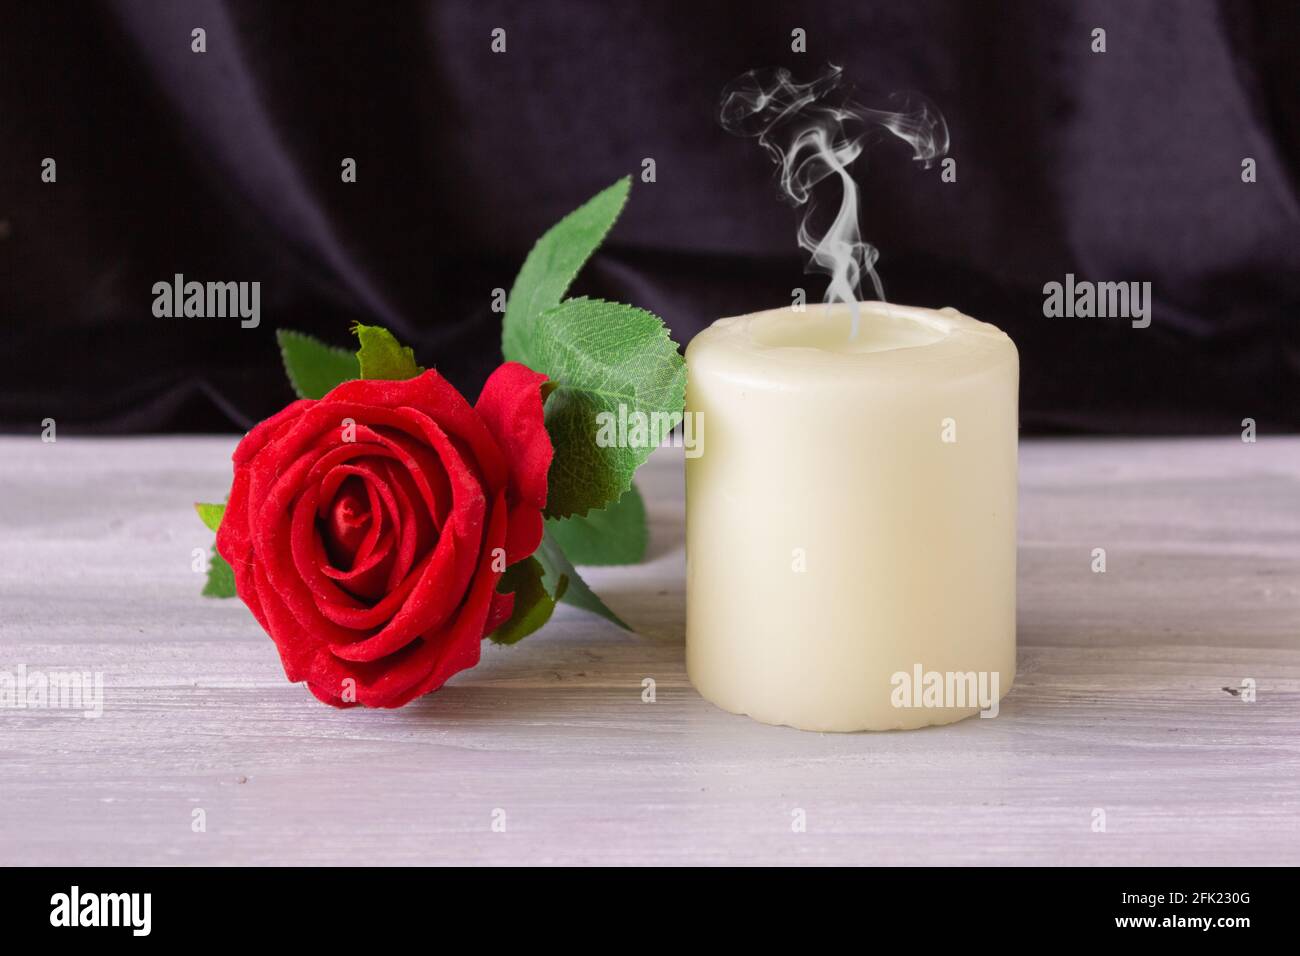 El concepto de recuerdo, funerales y condolencias. Vela y rosa roja sobre  fondo negro, espacio libre para texto Fotografía de stock - Alamy